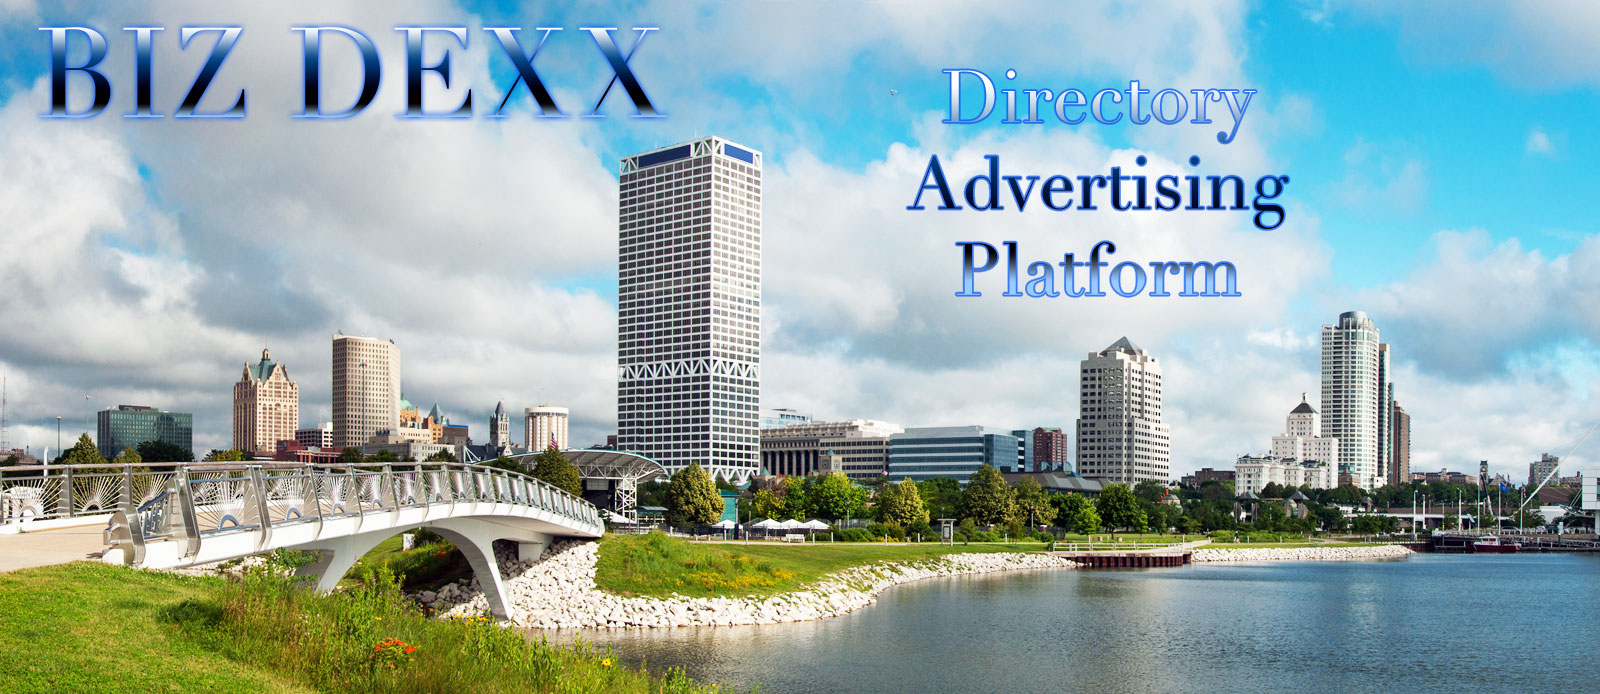 Biz Dexxx Directory Advertising Platform